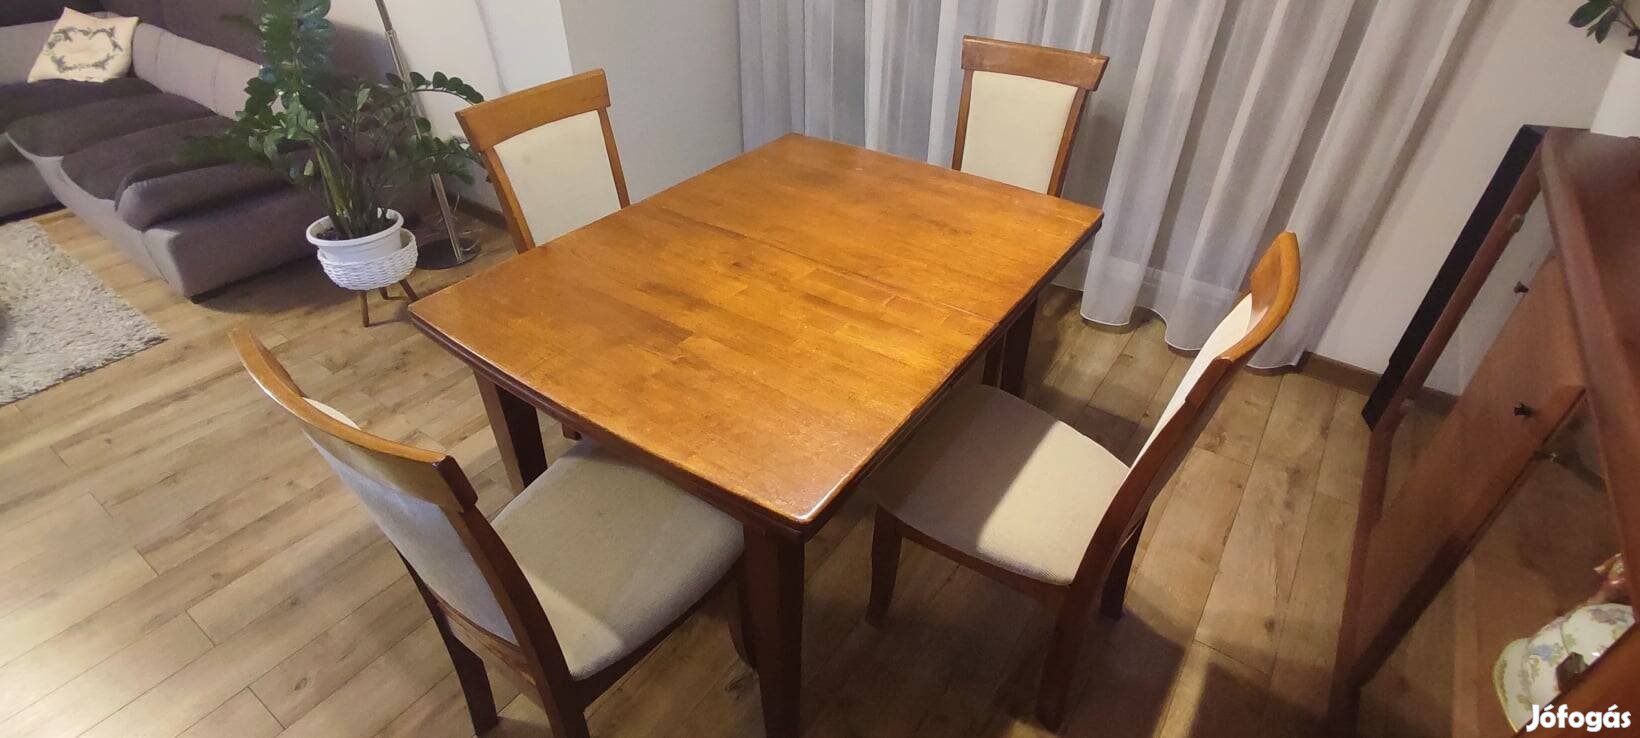 Diófa asztal , étkezőgarnitúra,  4 személyes